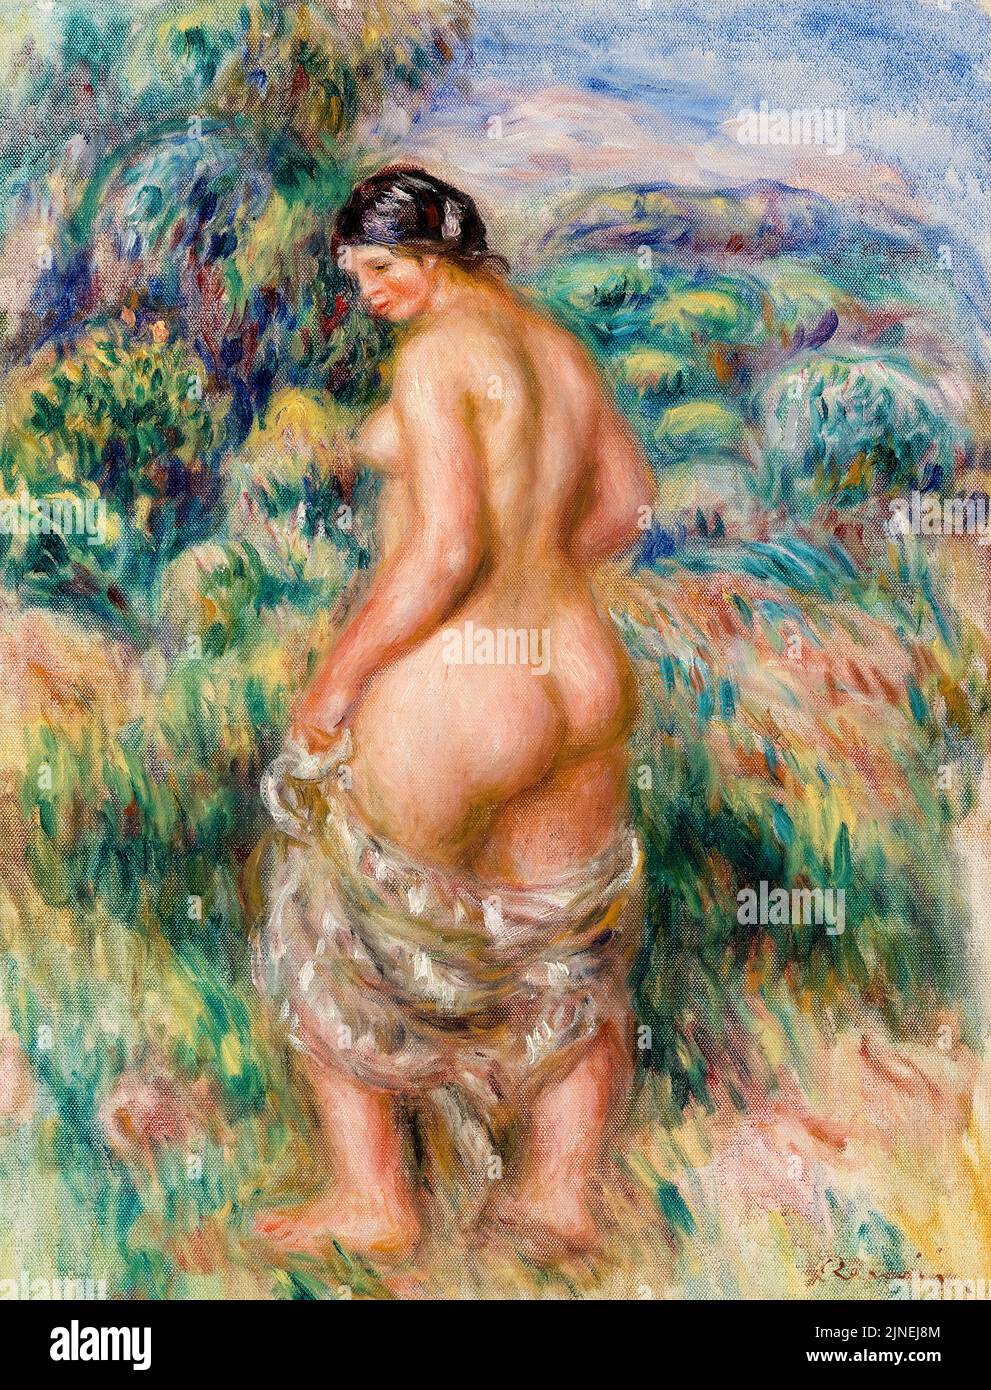 Bather debout, peinture à l'huile sur toile par Pierre Auguste Renoir, vers 1910 Banque D'Images